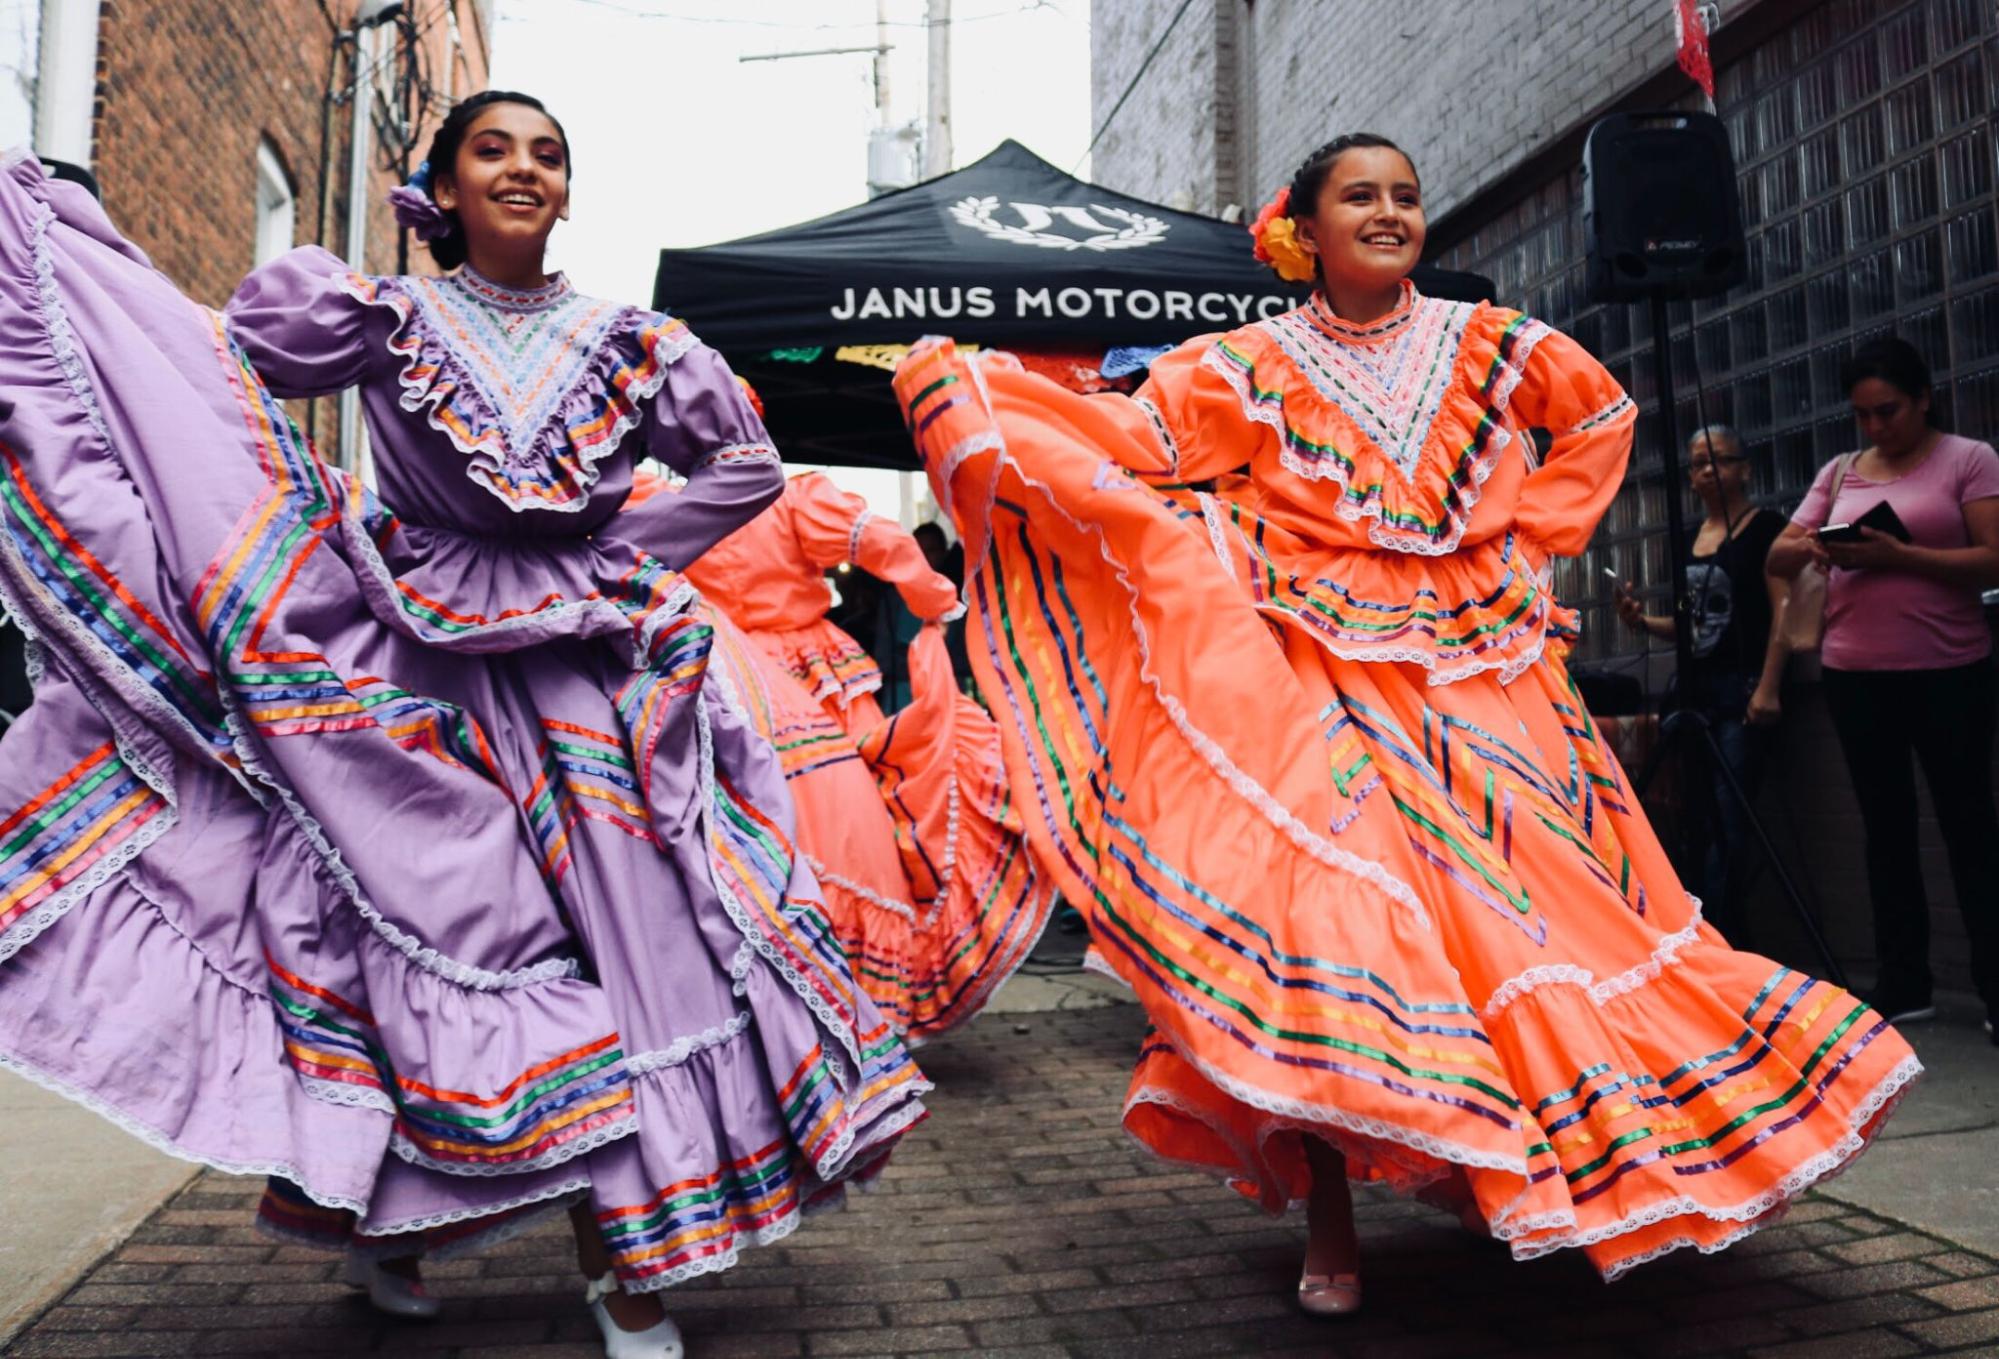 alt text: Foto de duas mulheres com vestidos longos, um roxo e outro laranja, e dançando uma dança típica de sua cultura